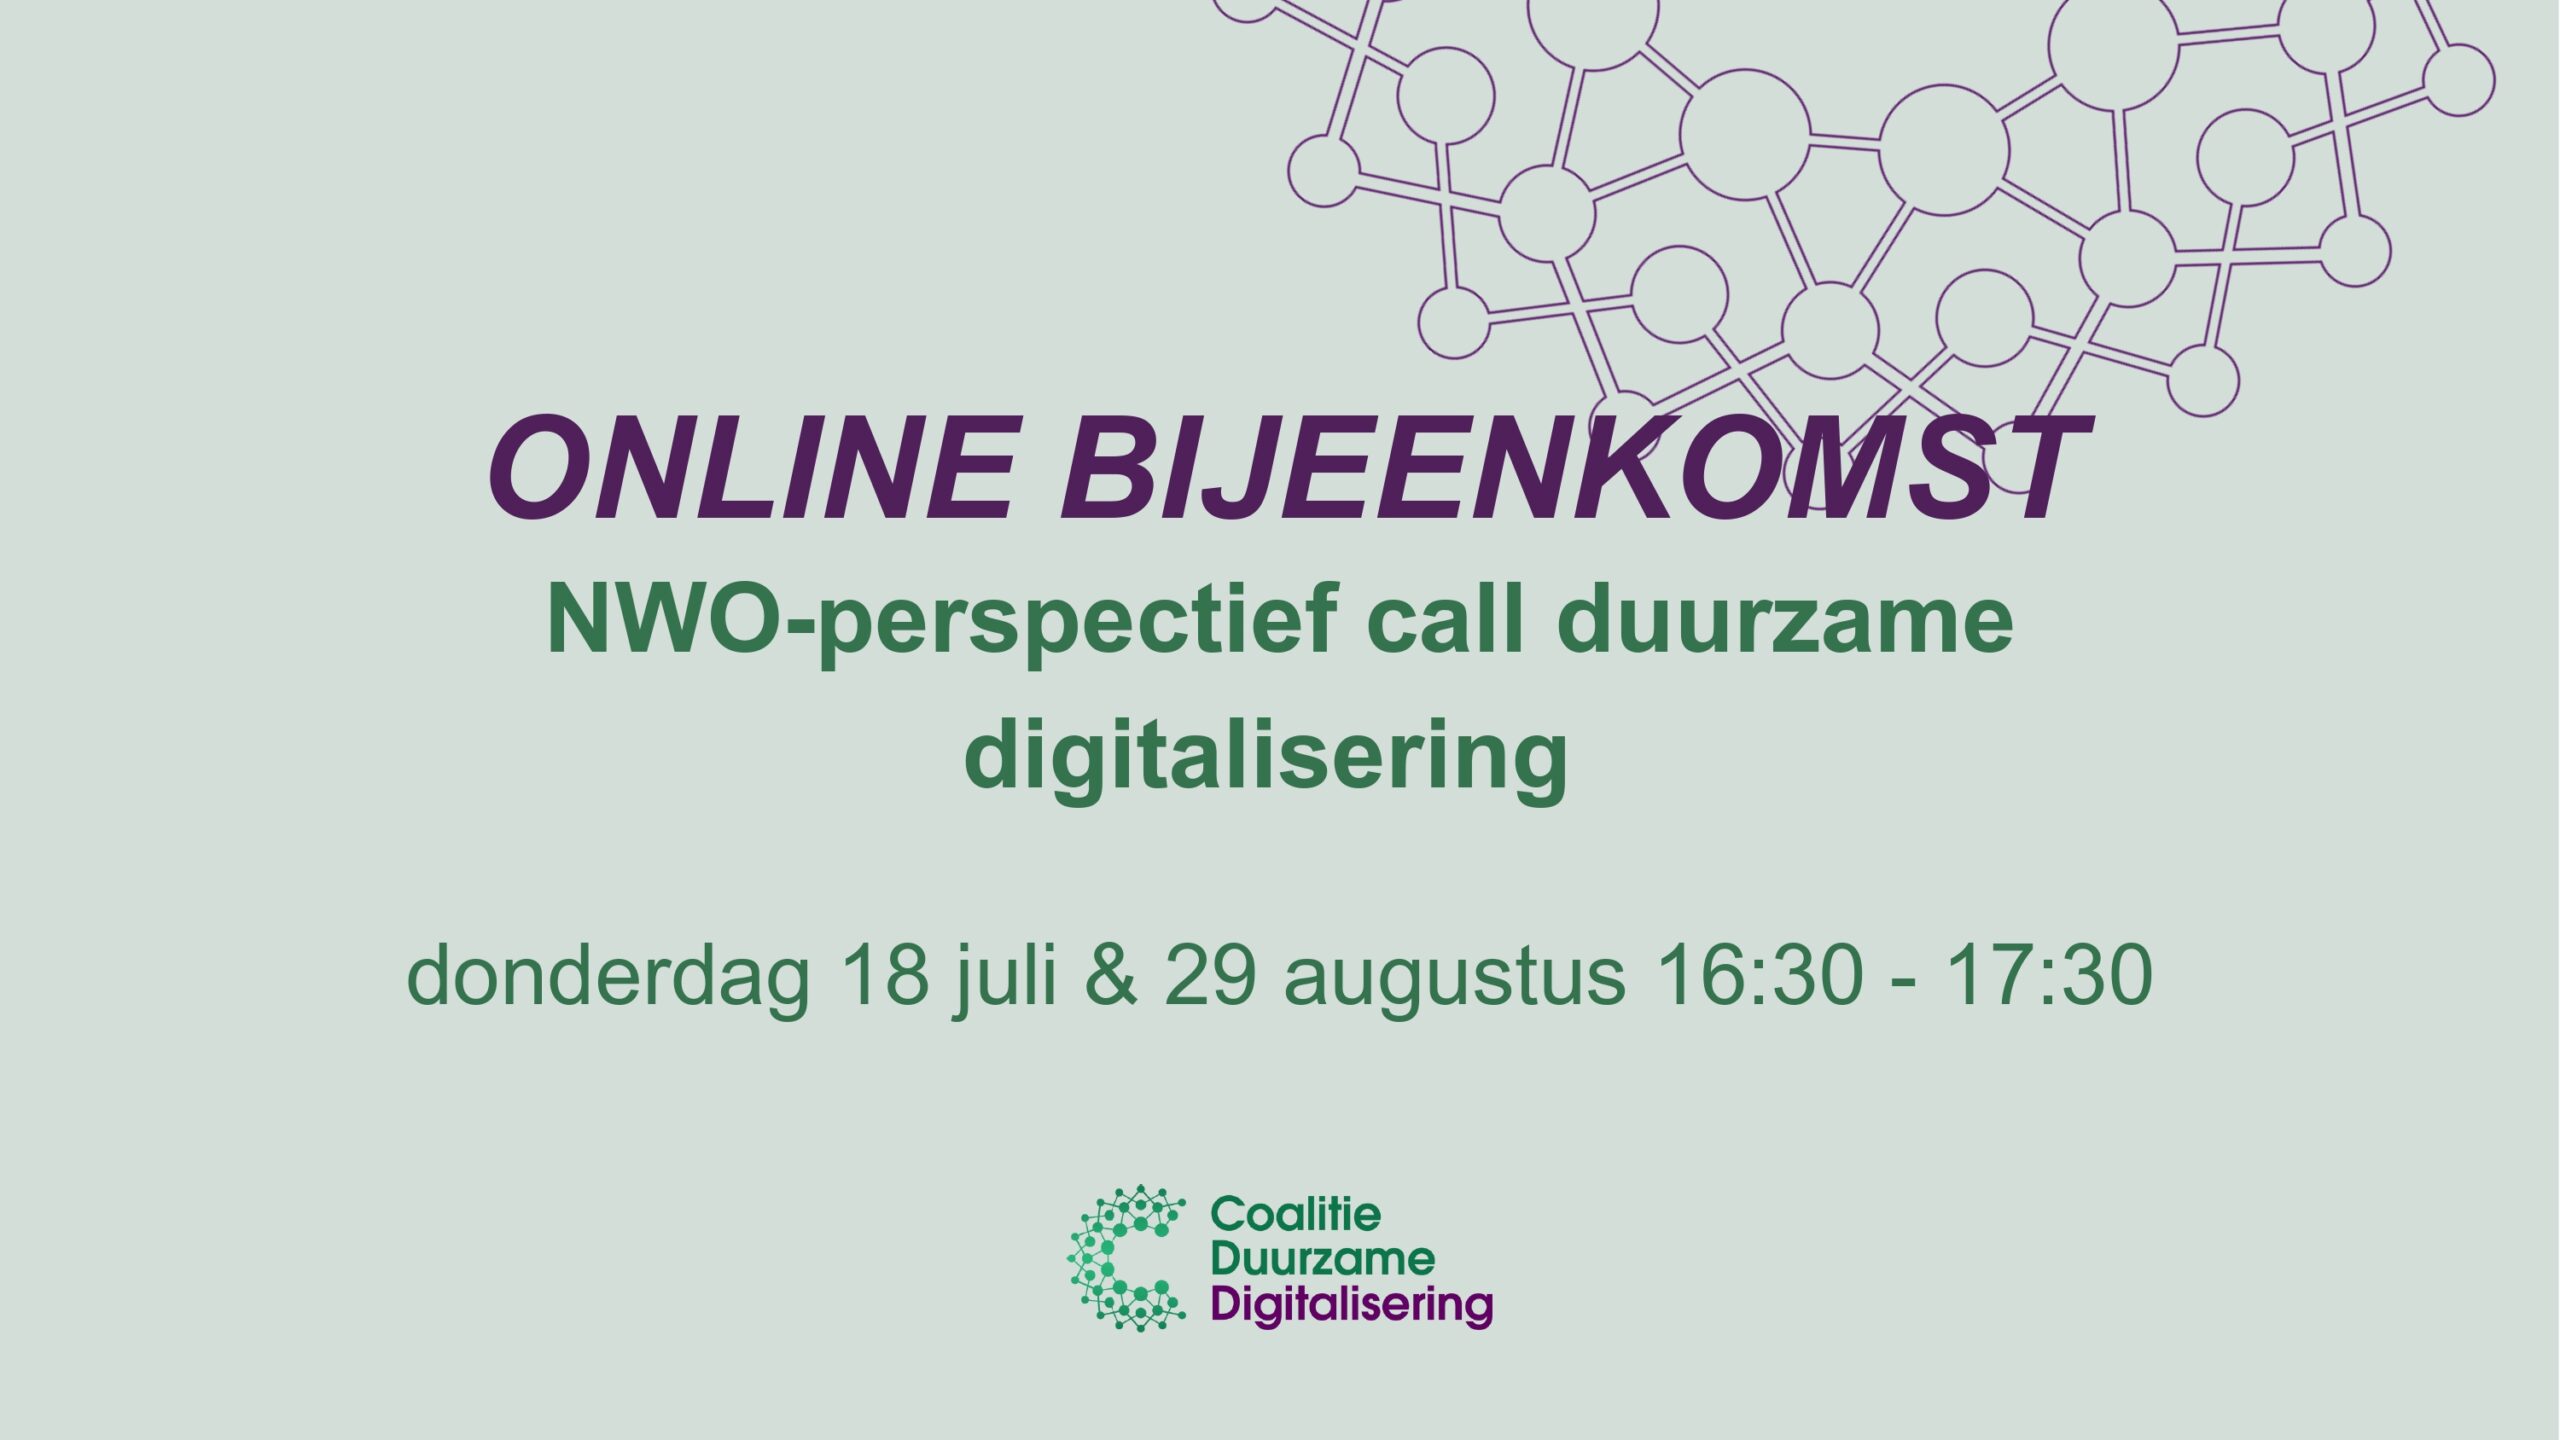 Online bijeenkomst NWO-perspectief call duurzame digitalisering, deel twee